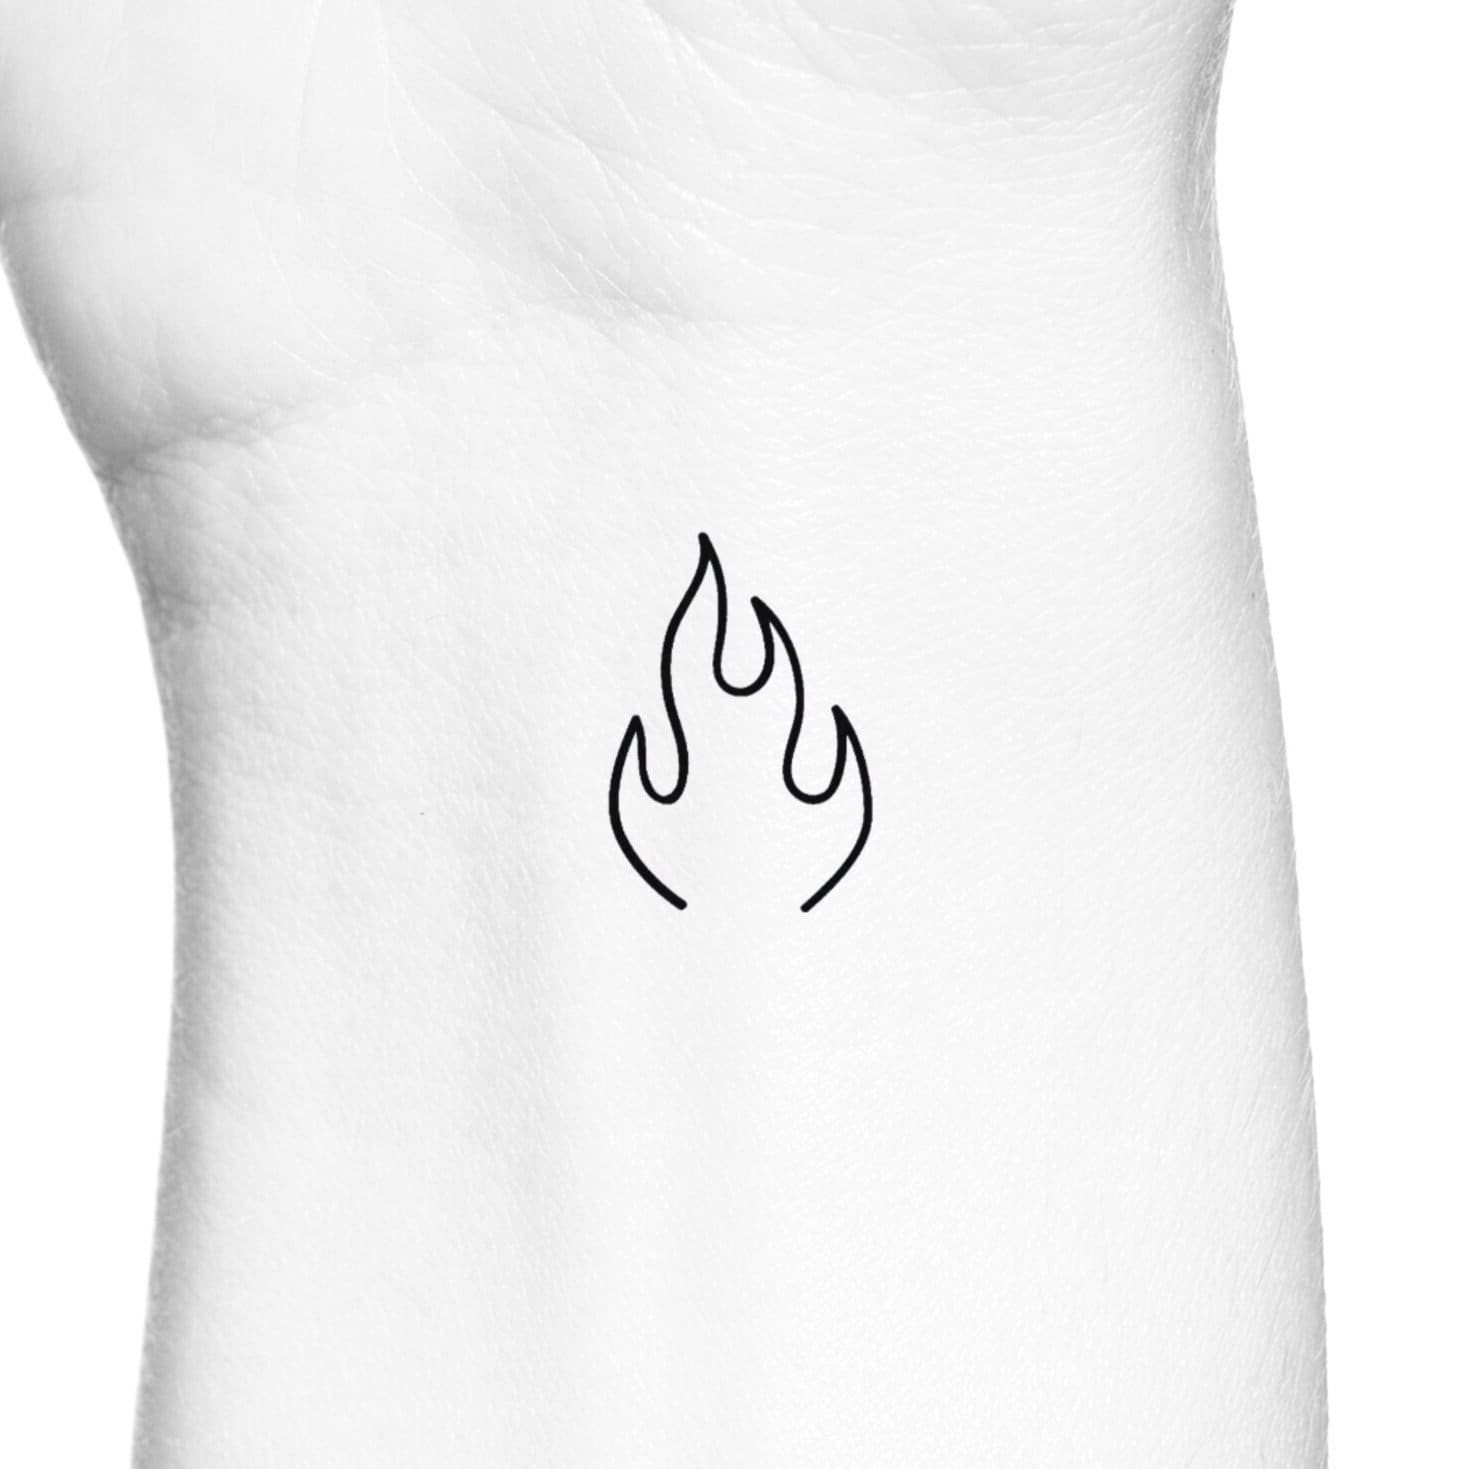 Tattoo uploaded by Tattoo by Hans • Flame Tattoo Wrist • Tattoodo